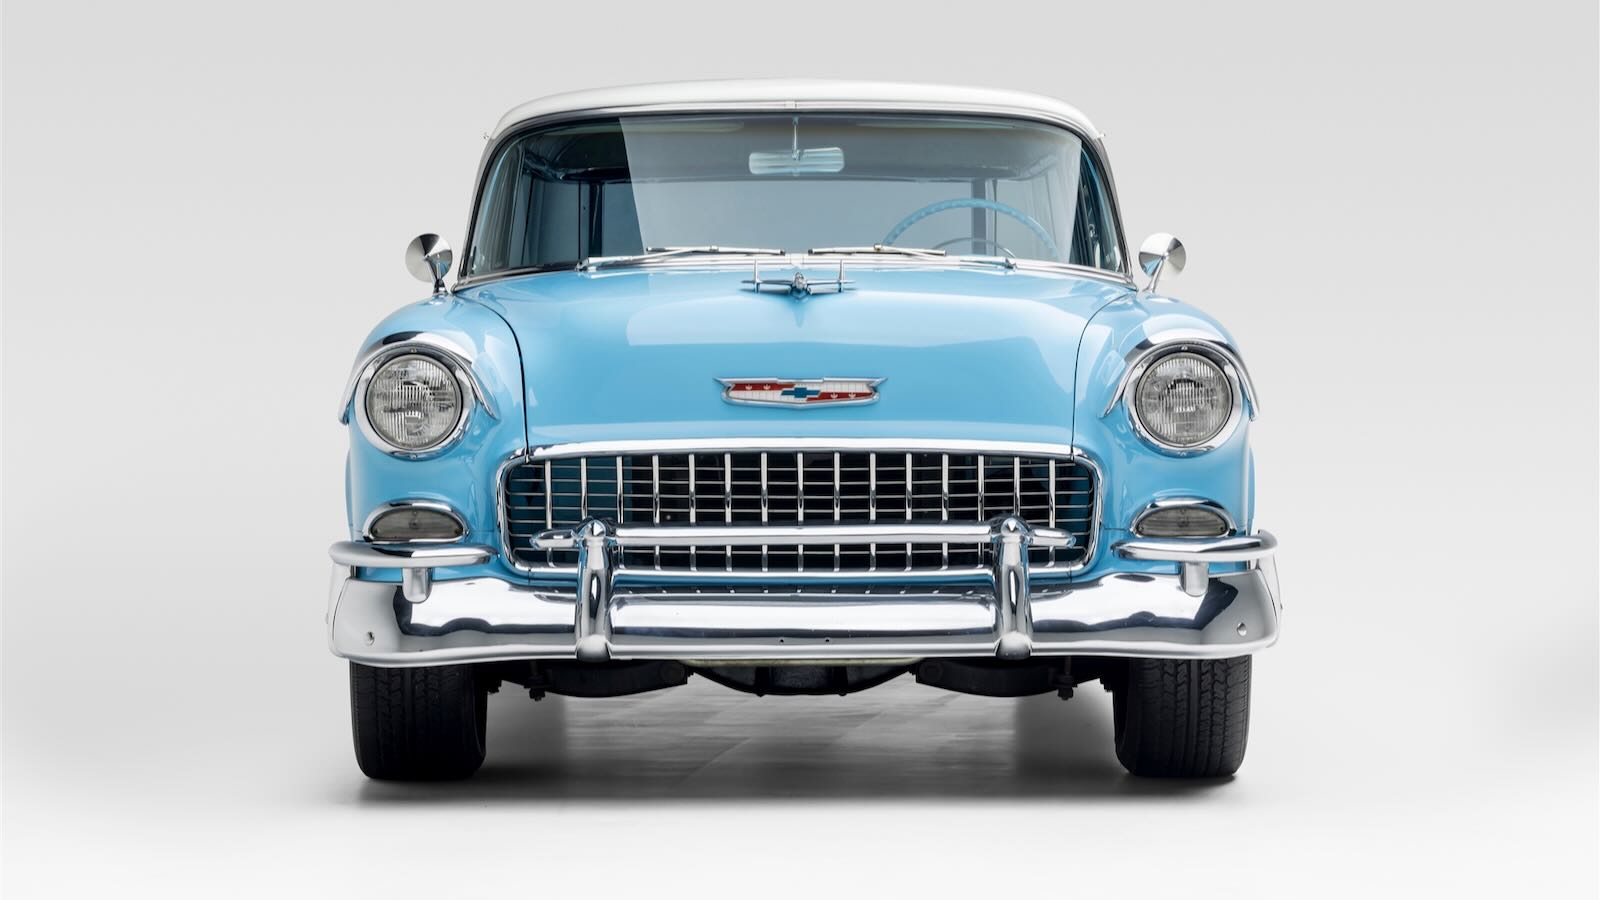 Chevrolet-Bel-Air-Nomad-1955-6.jpeg